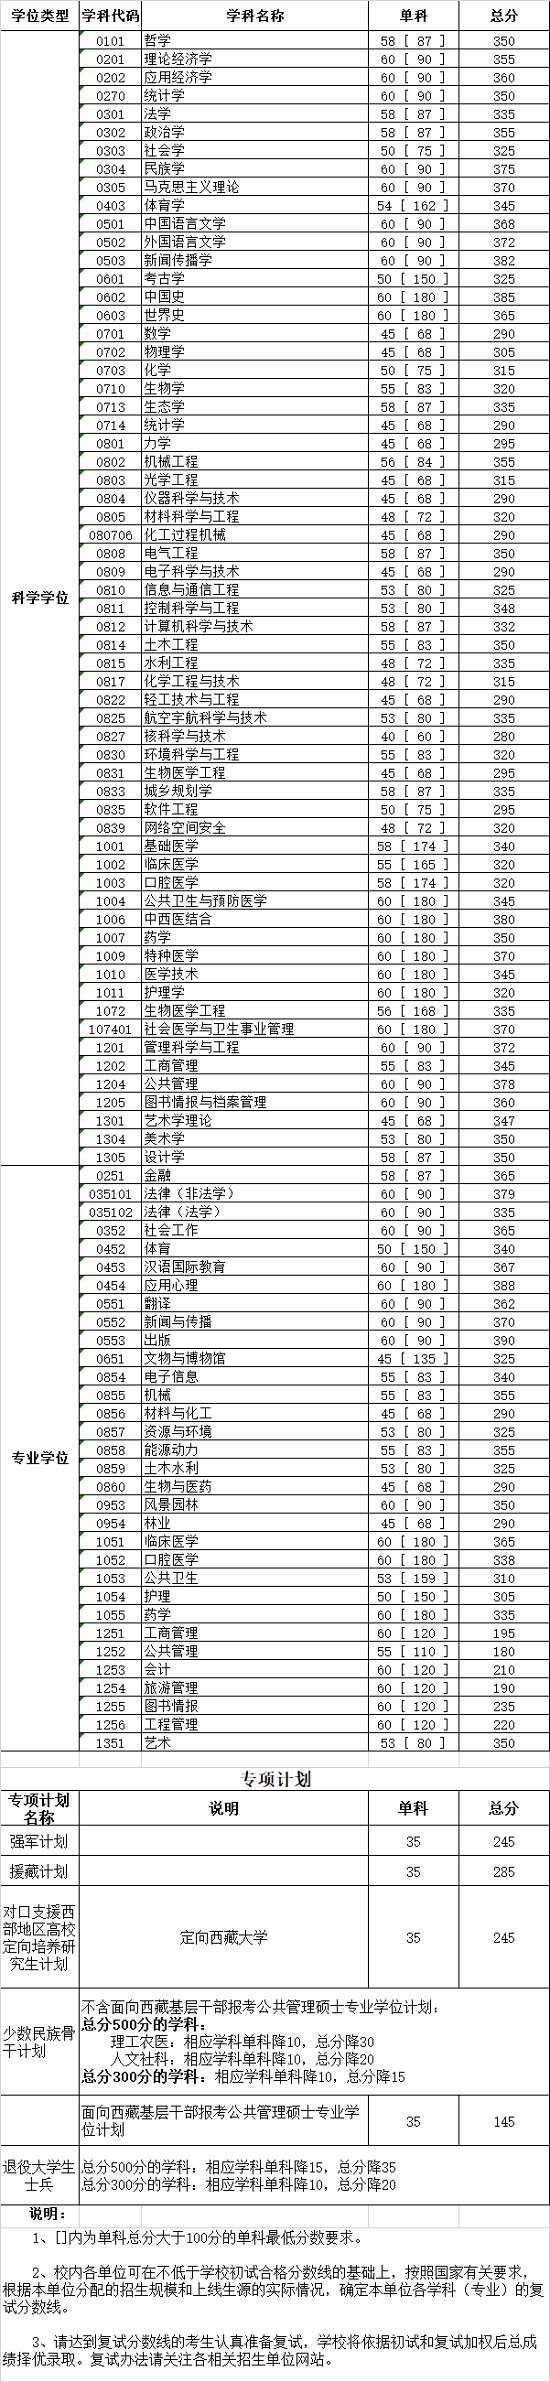 四川大学2020年硕士研究生入学考试初试合格分数线